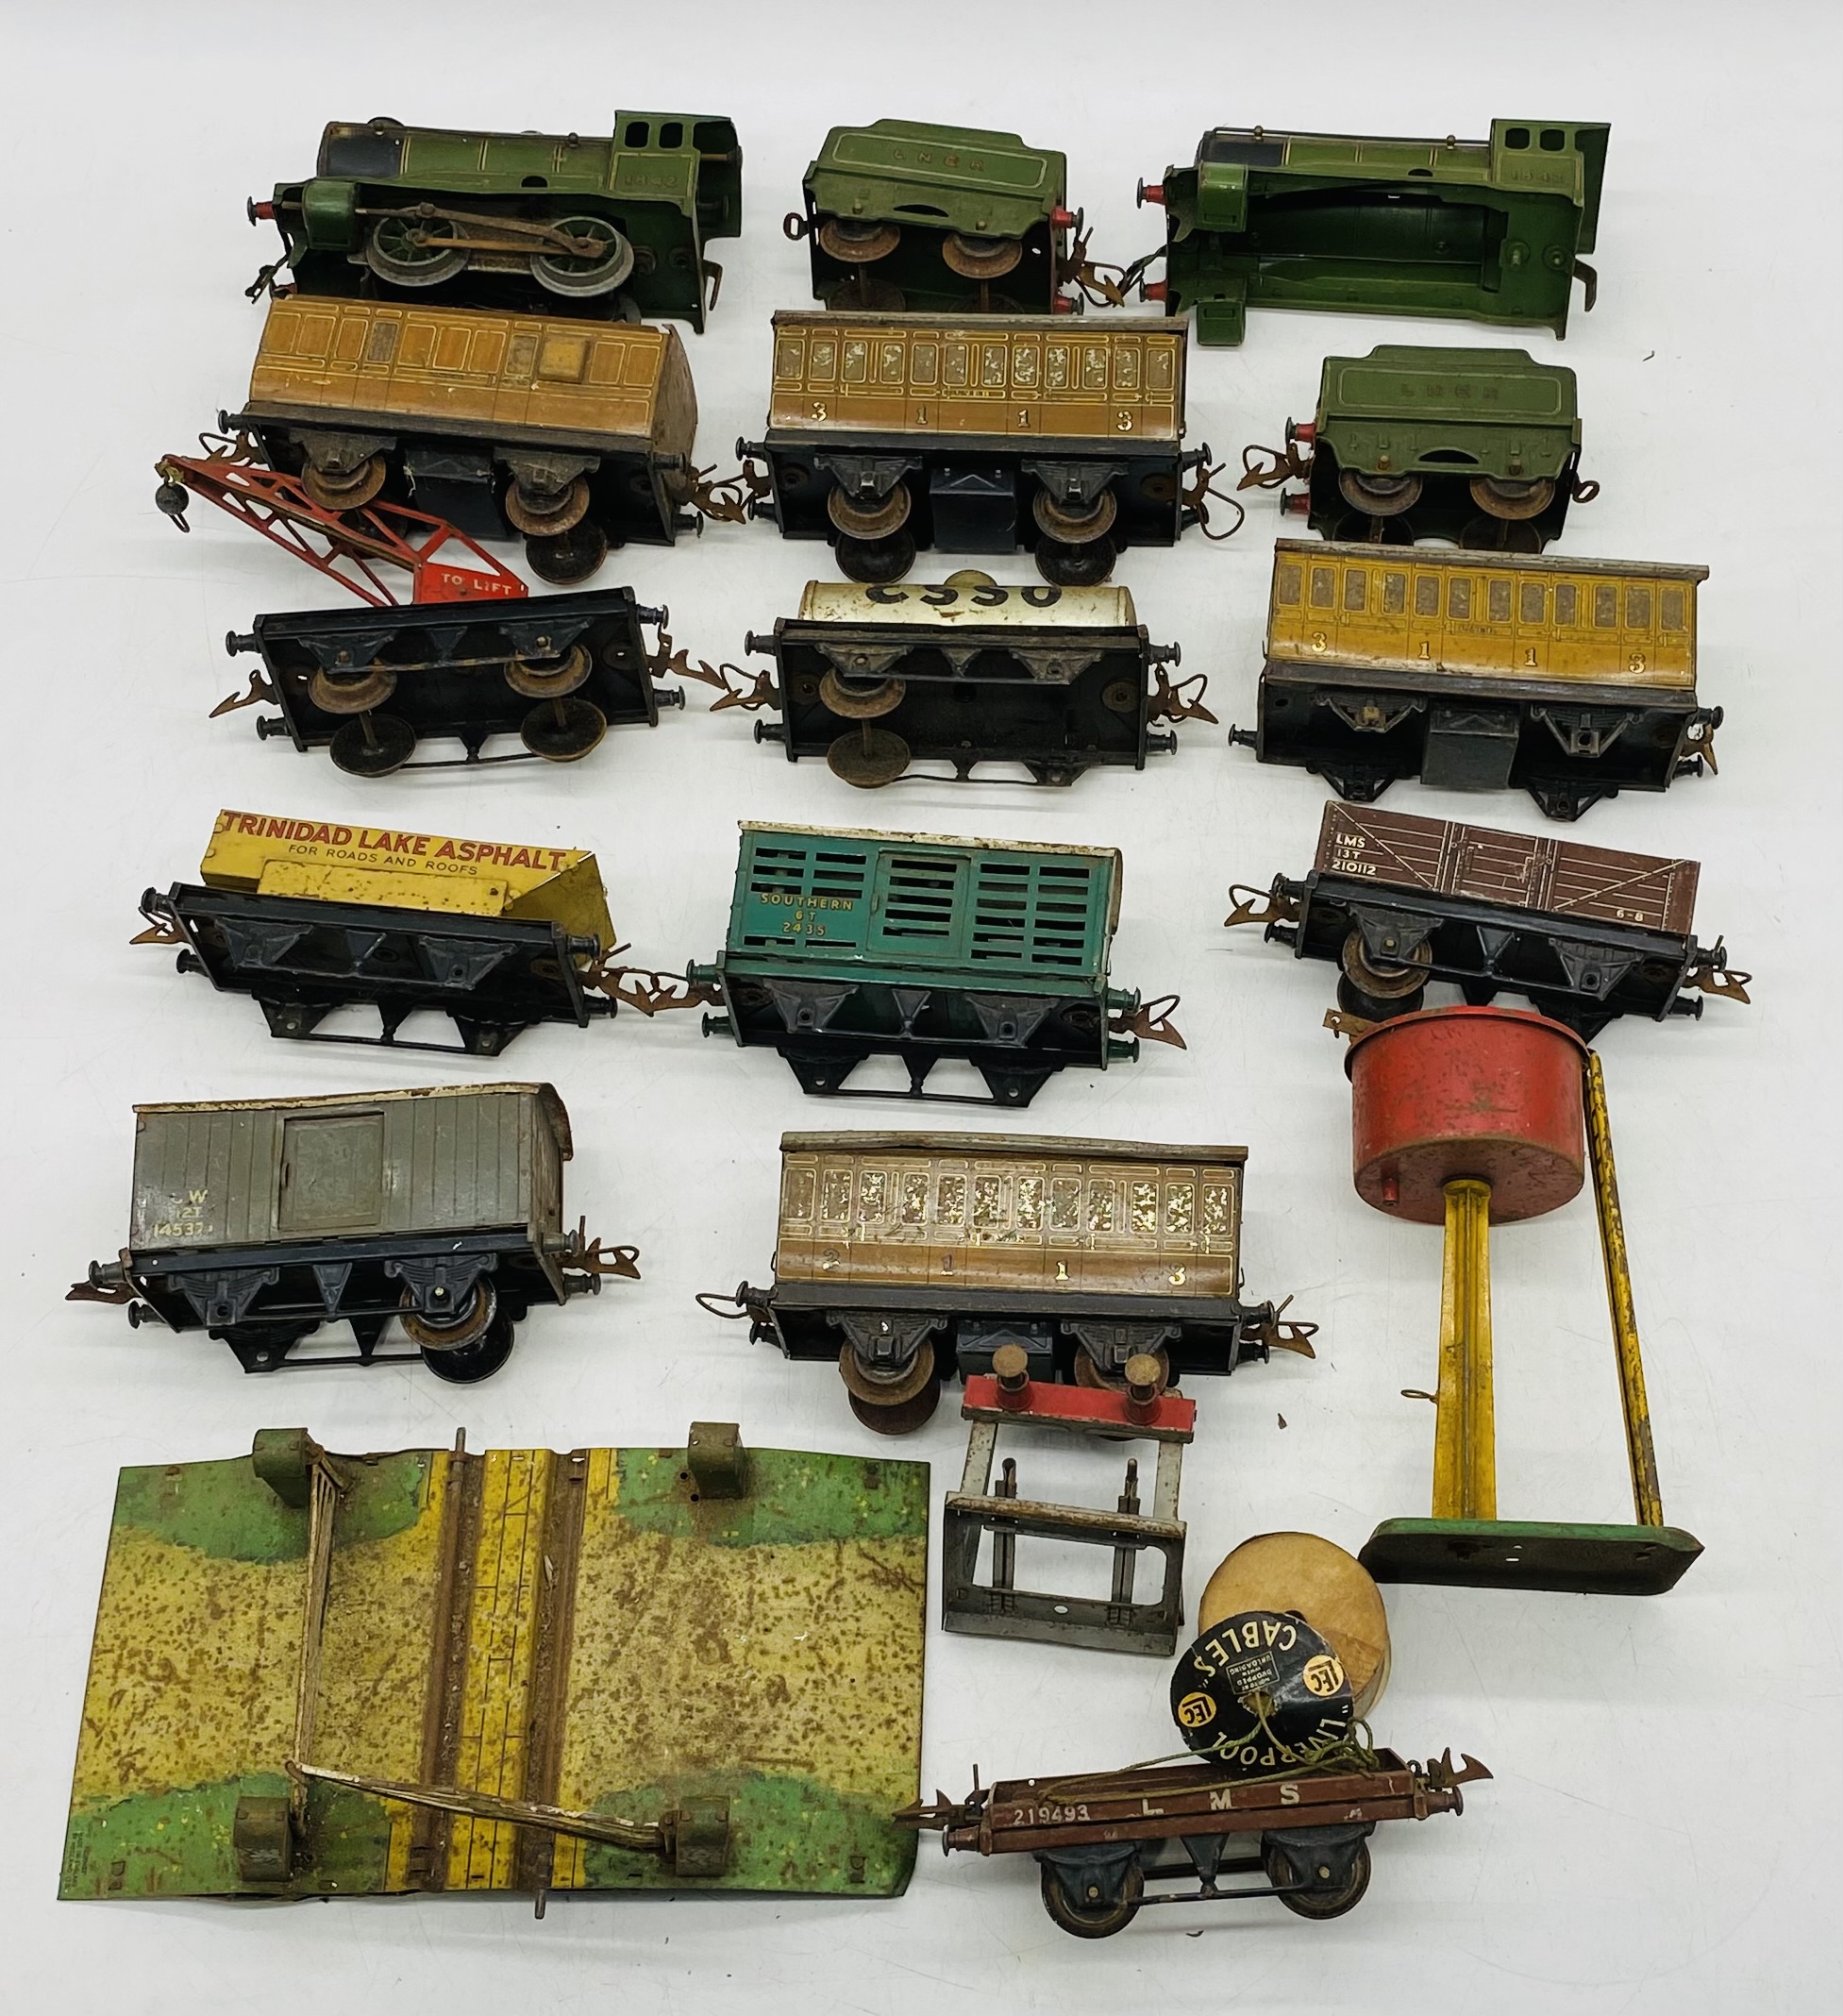 A vintage Hornby clockwork train set including locomotive, tender, rolling stock, tankers,